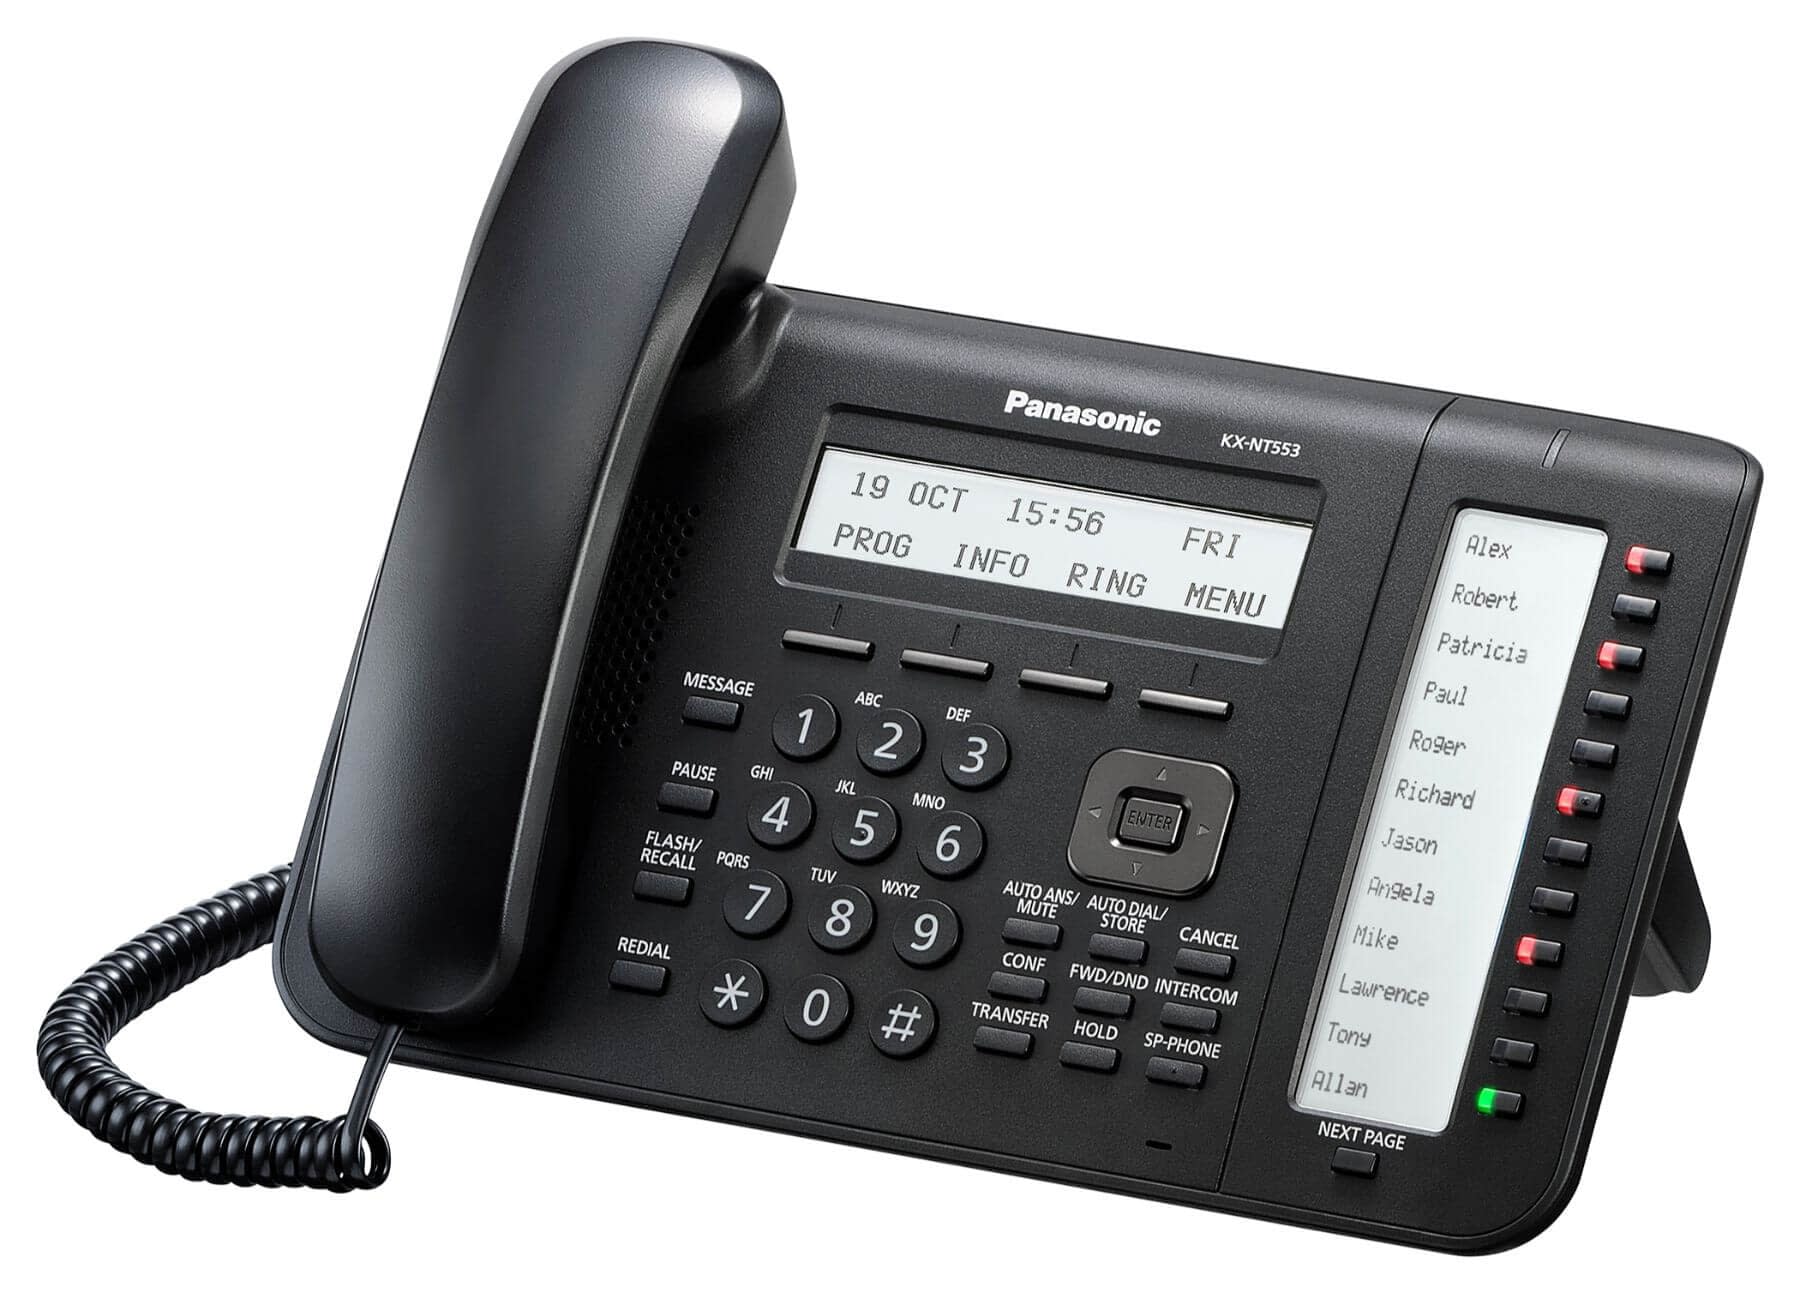 Panasonic KX-NT553 IP Phone Image